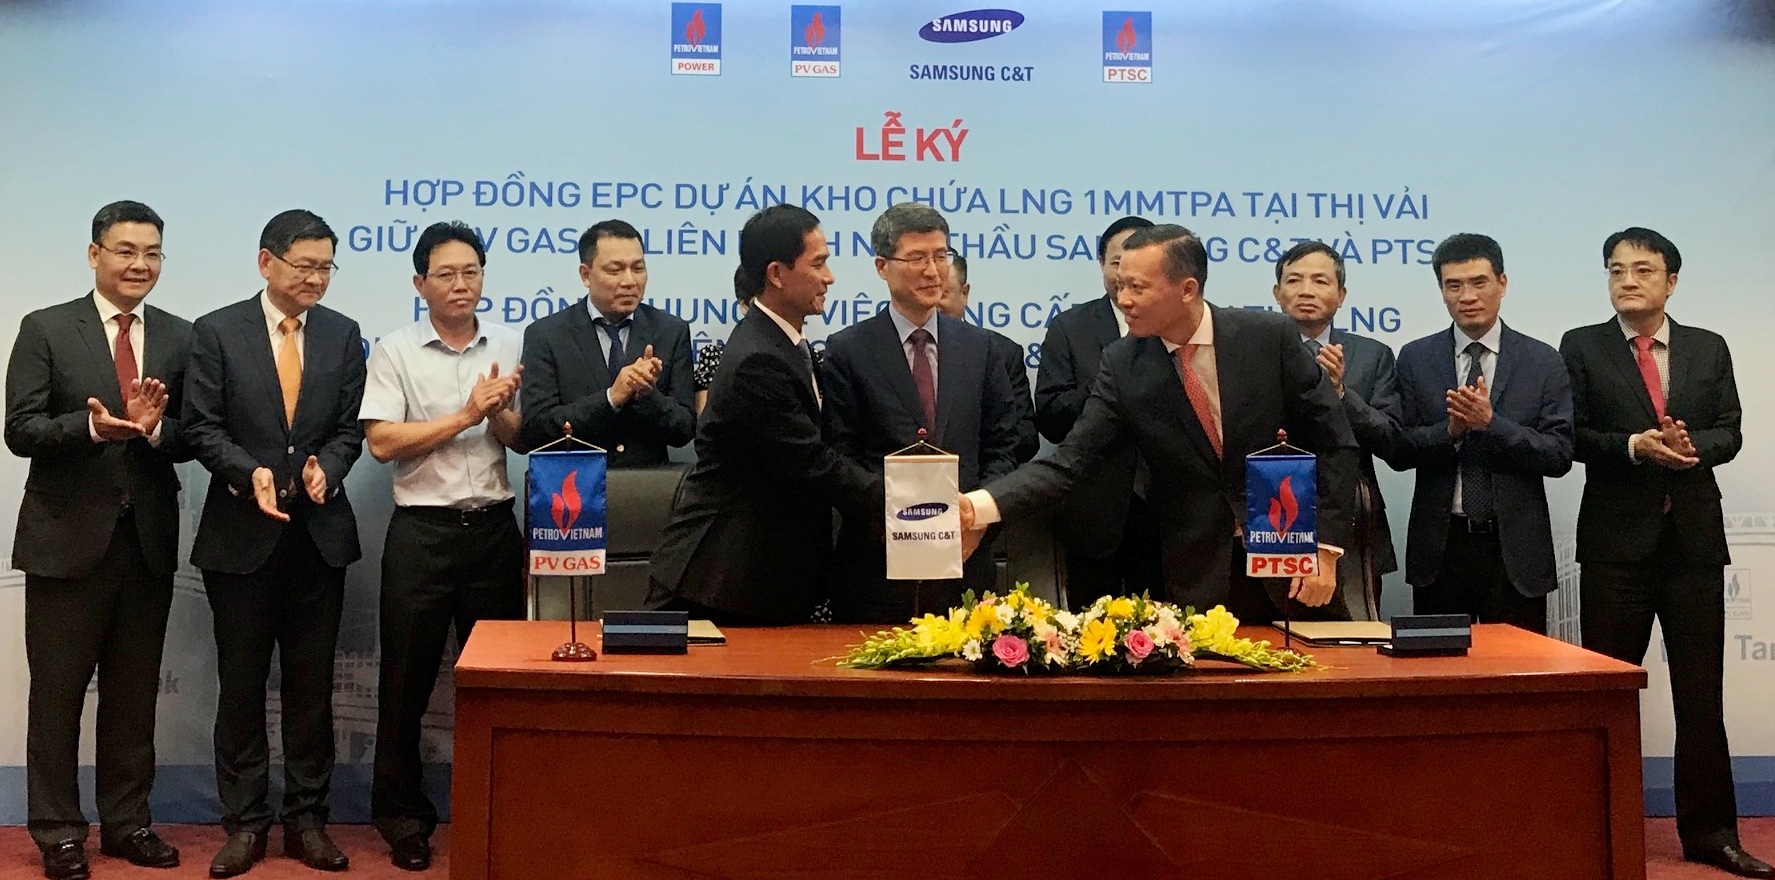 Tập đoàn Samsung C&T xây dựng trạm dự trữ LNG đầu tiên tại Việt Nam